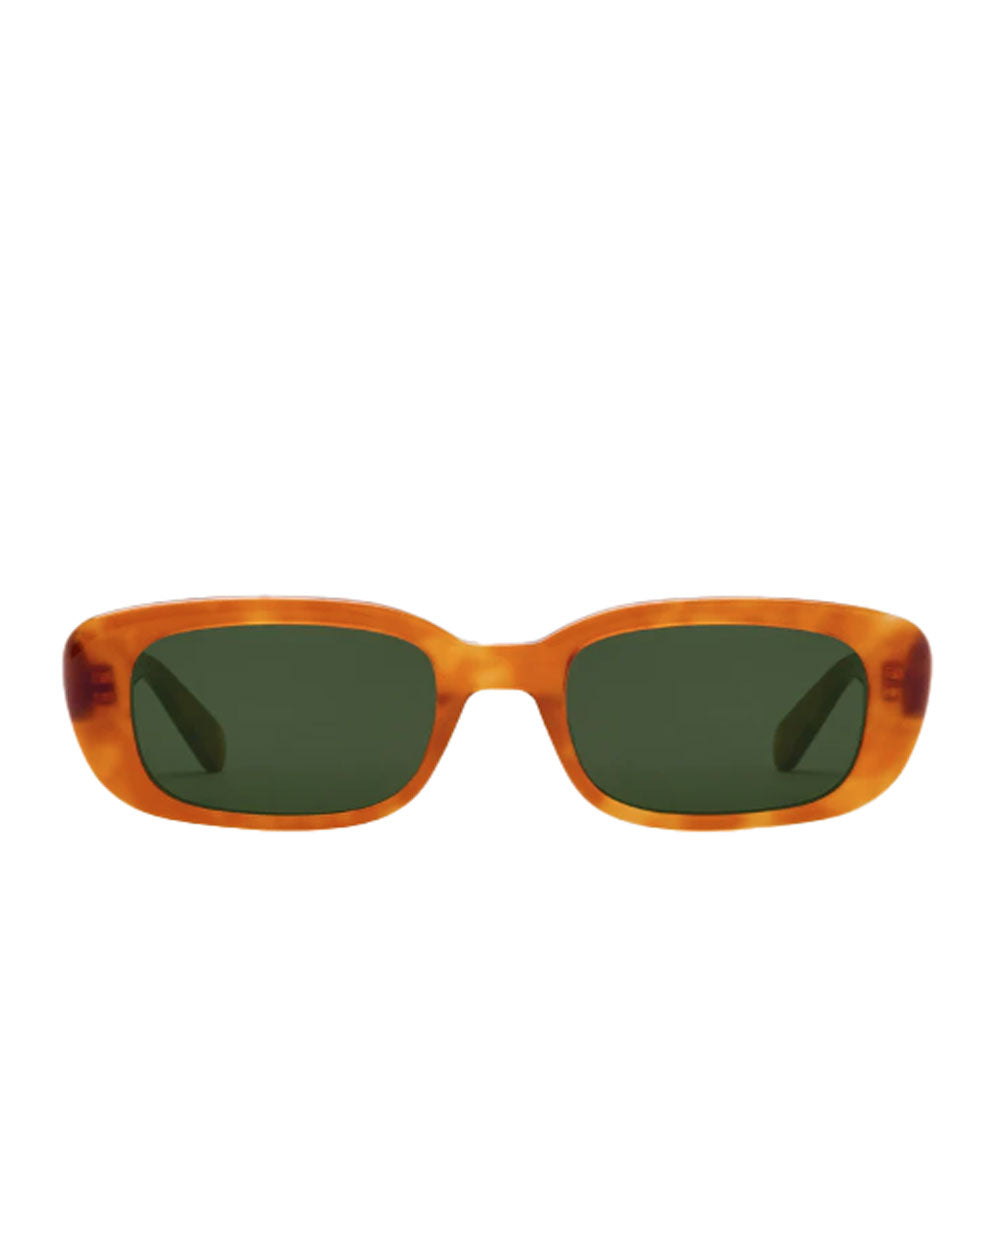 Milan Sunglasses in Amaro & Chamomile